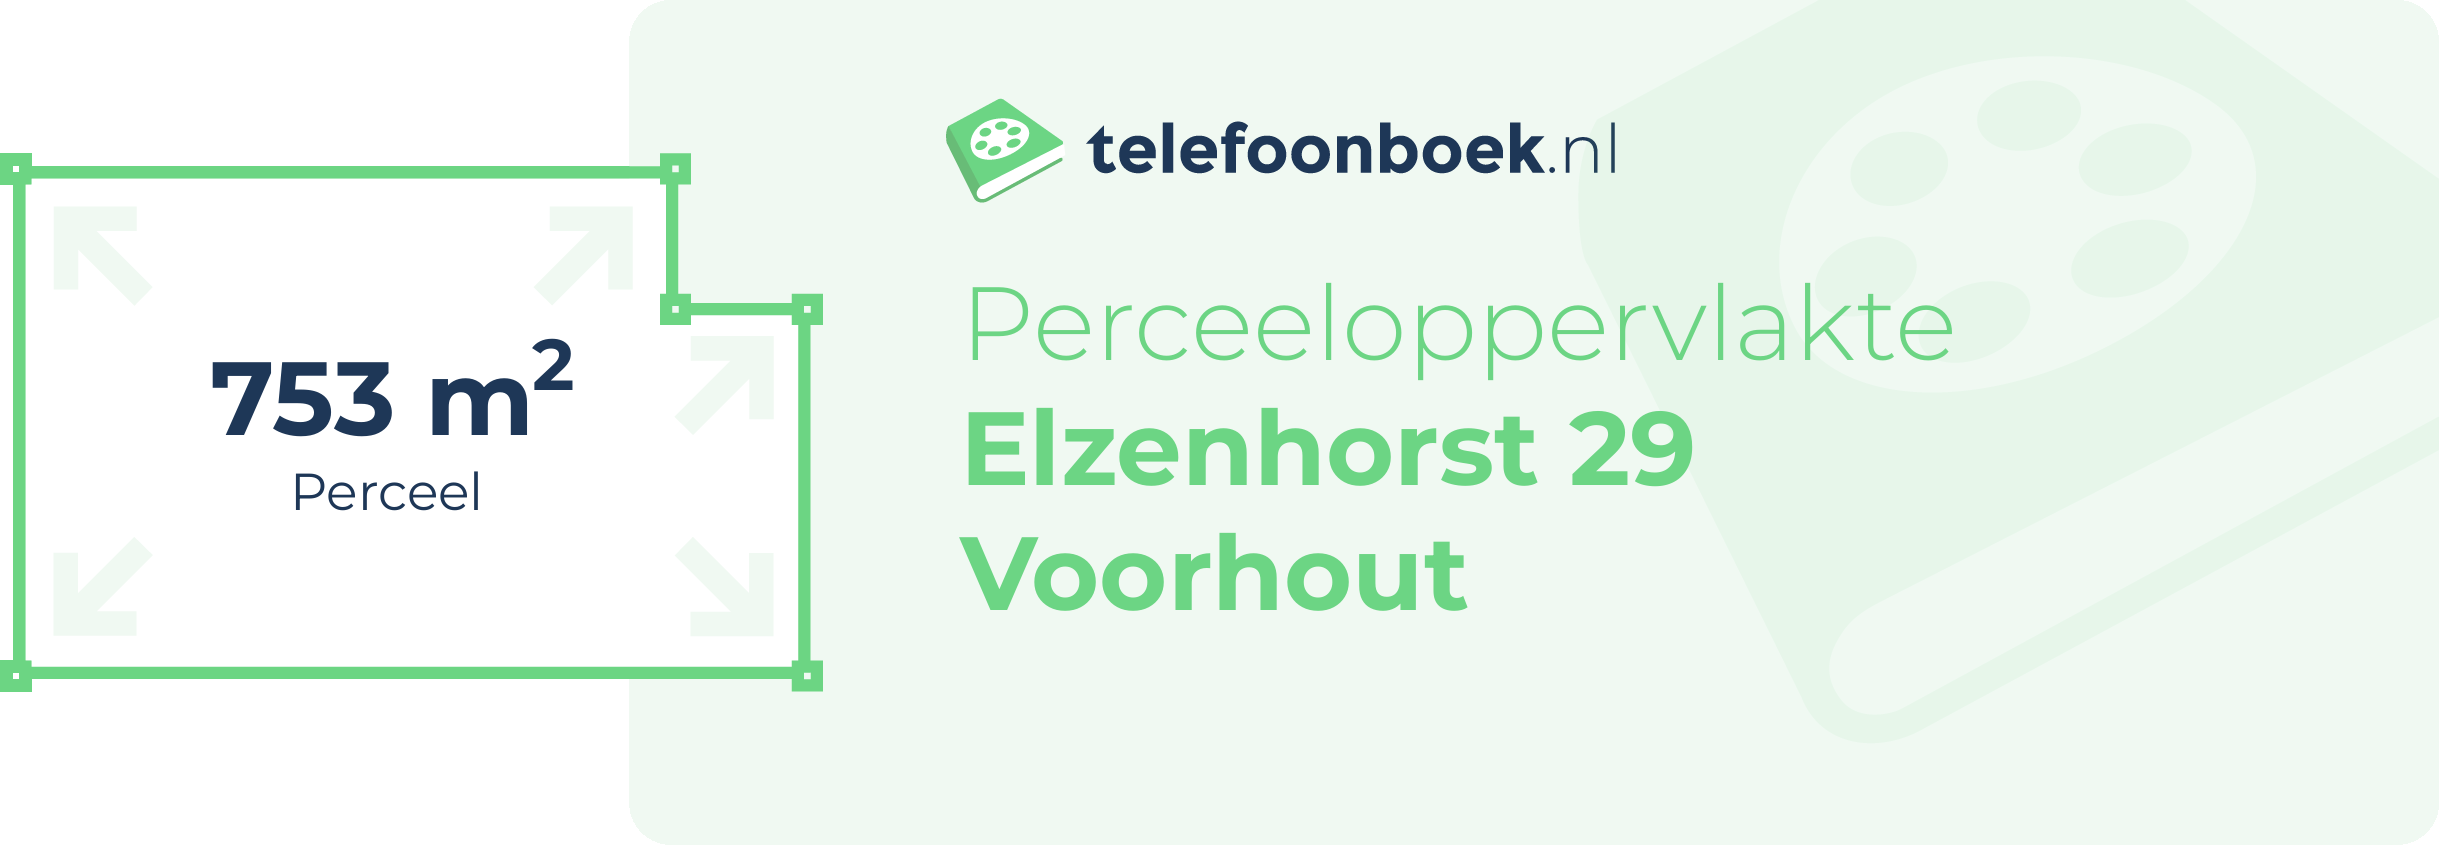 Perceeloppervlakte Elzenhorst 29 Voorhout